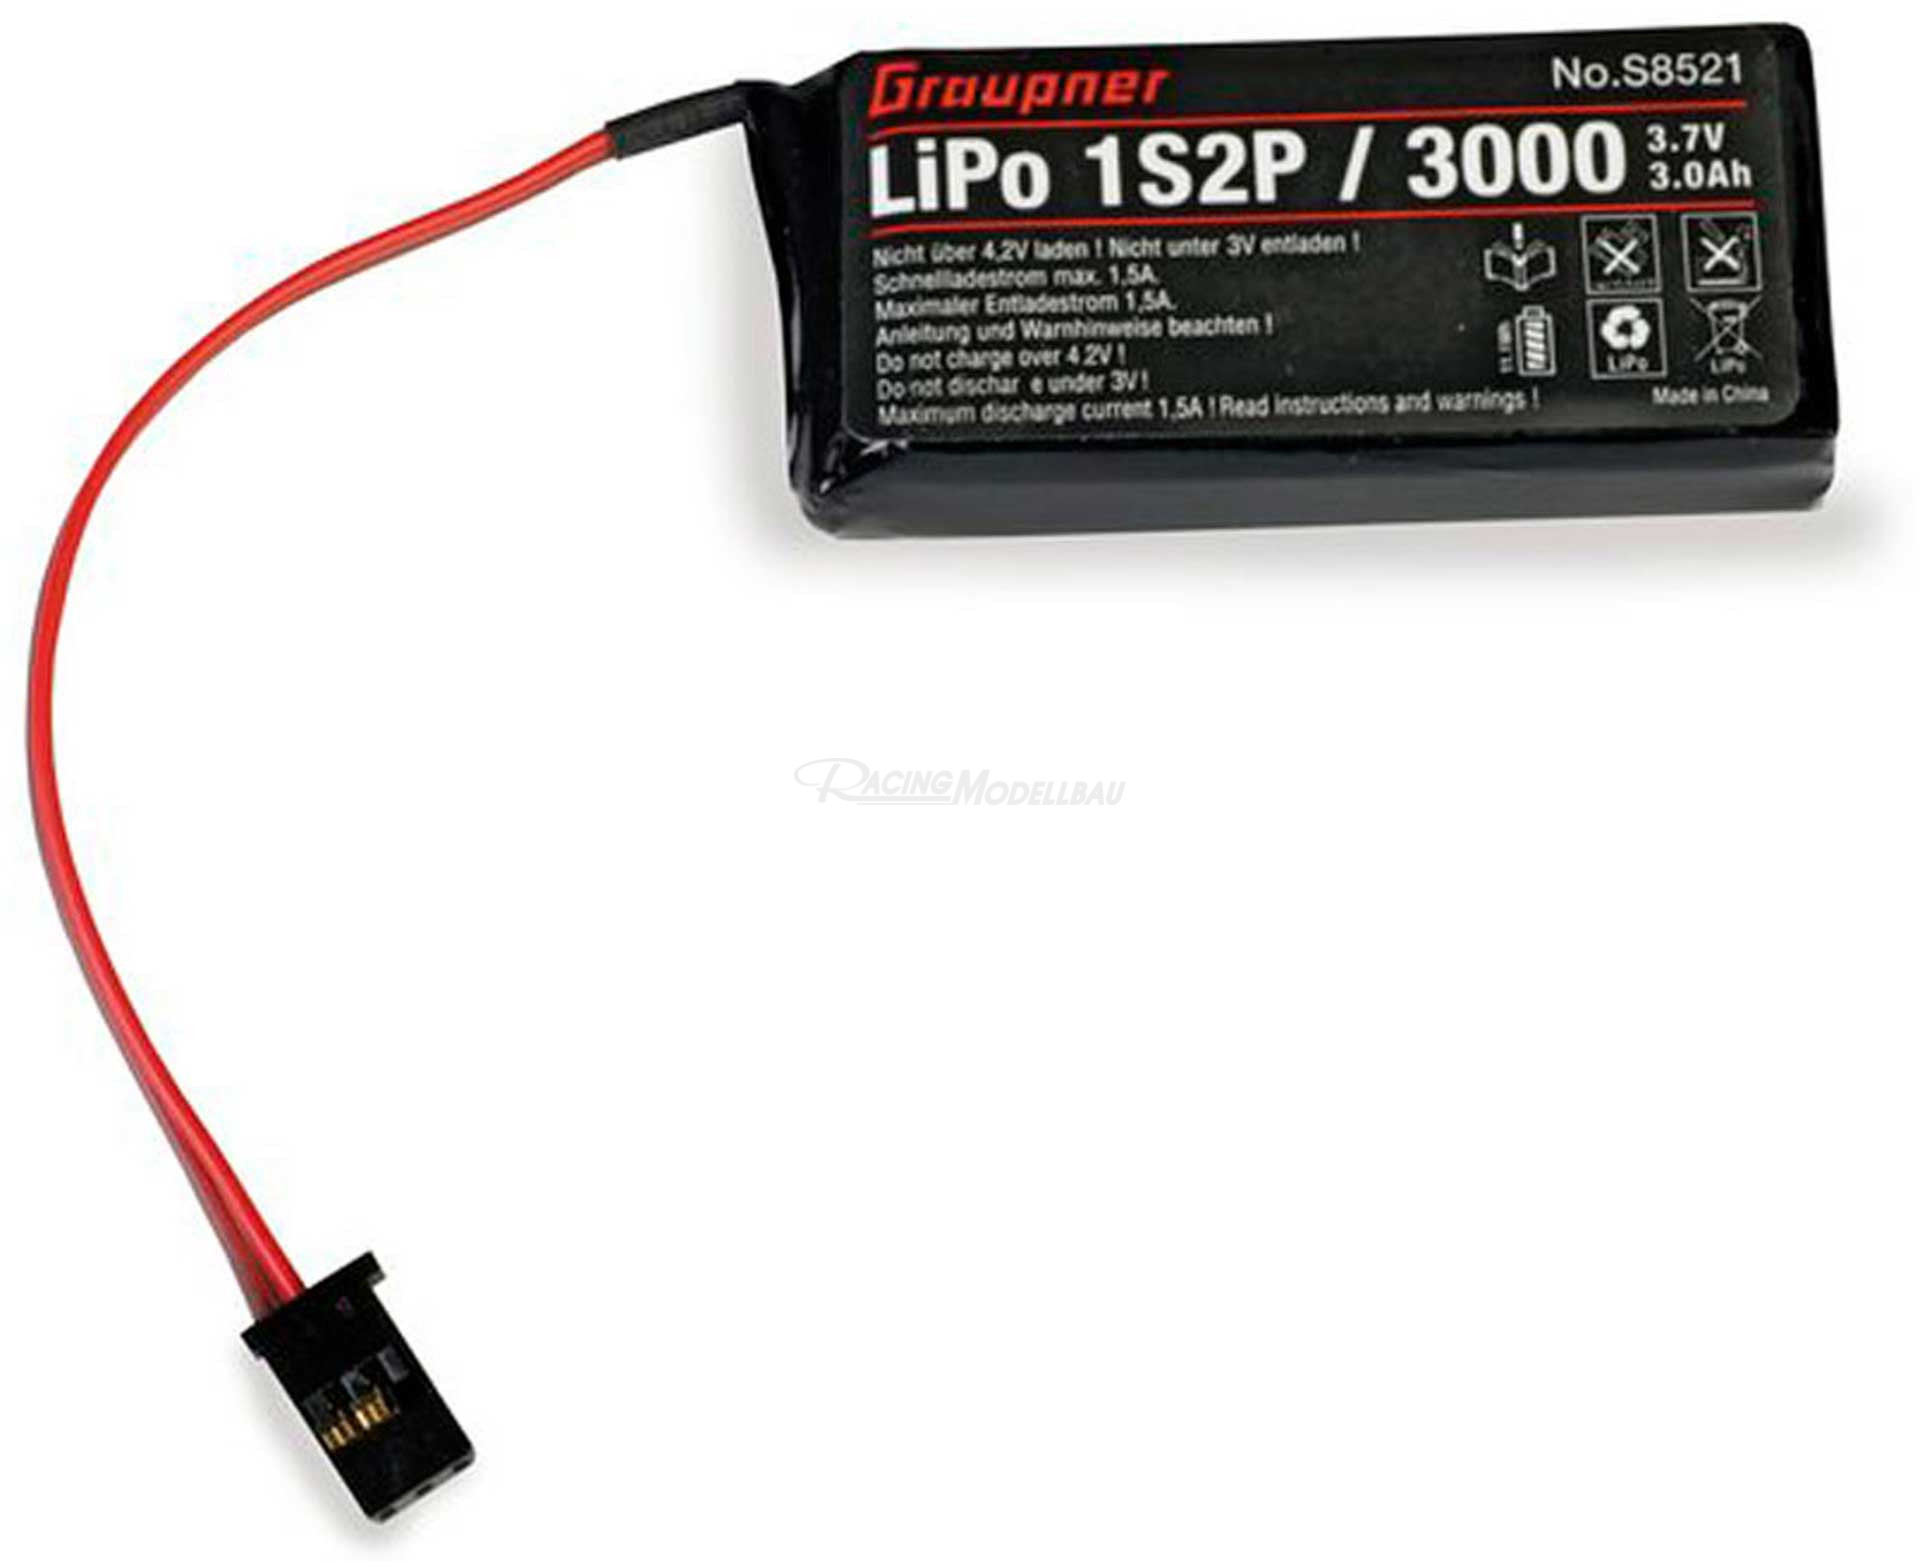 Senderakku LiPo 1S2P/3000 .,7V